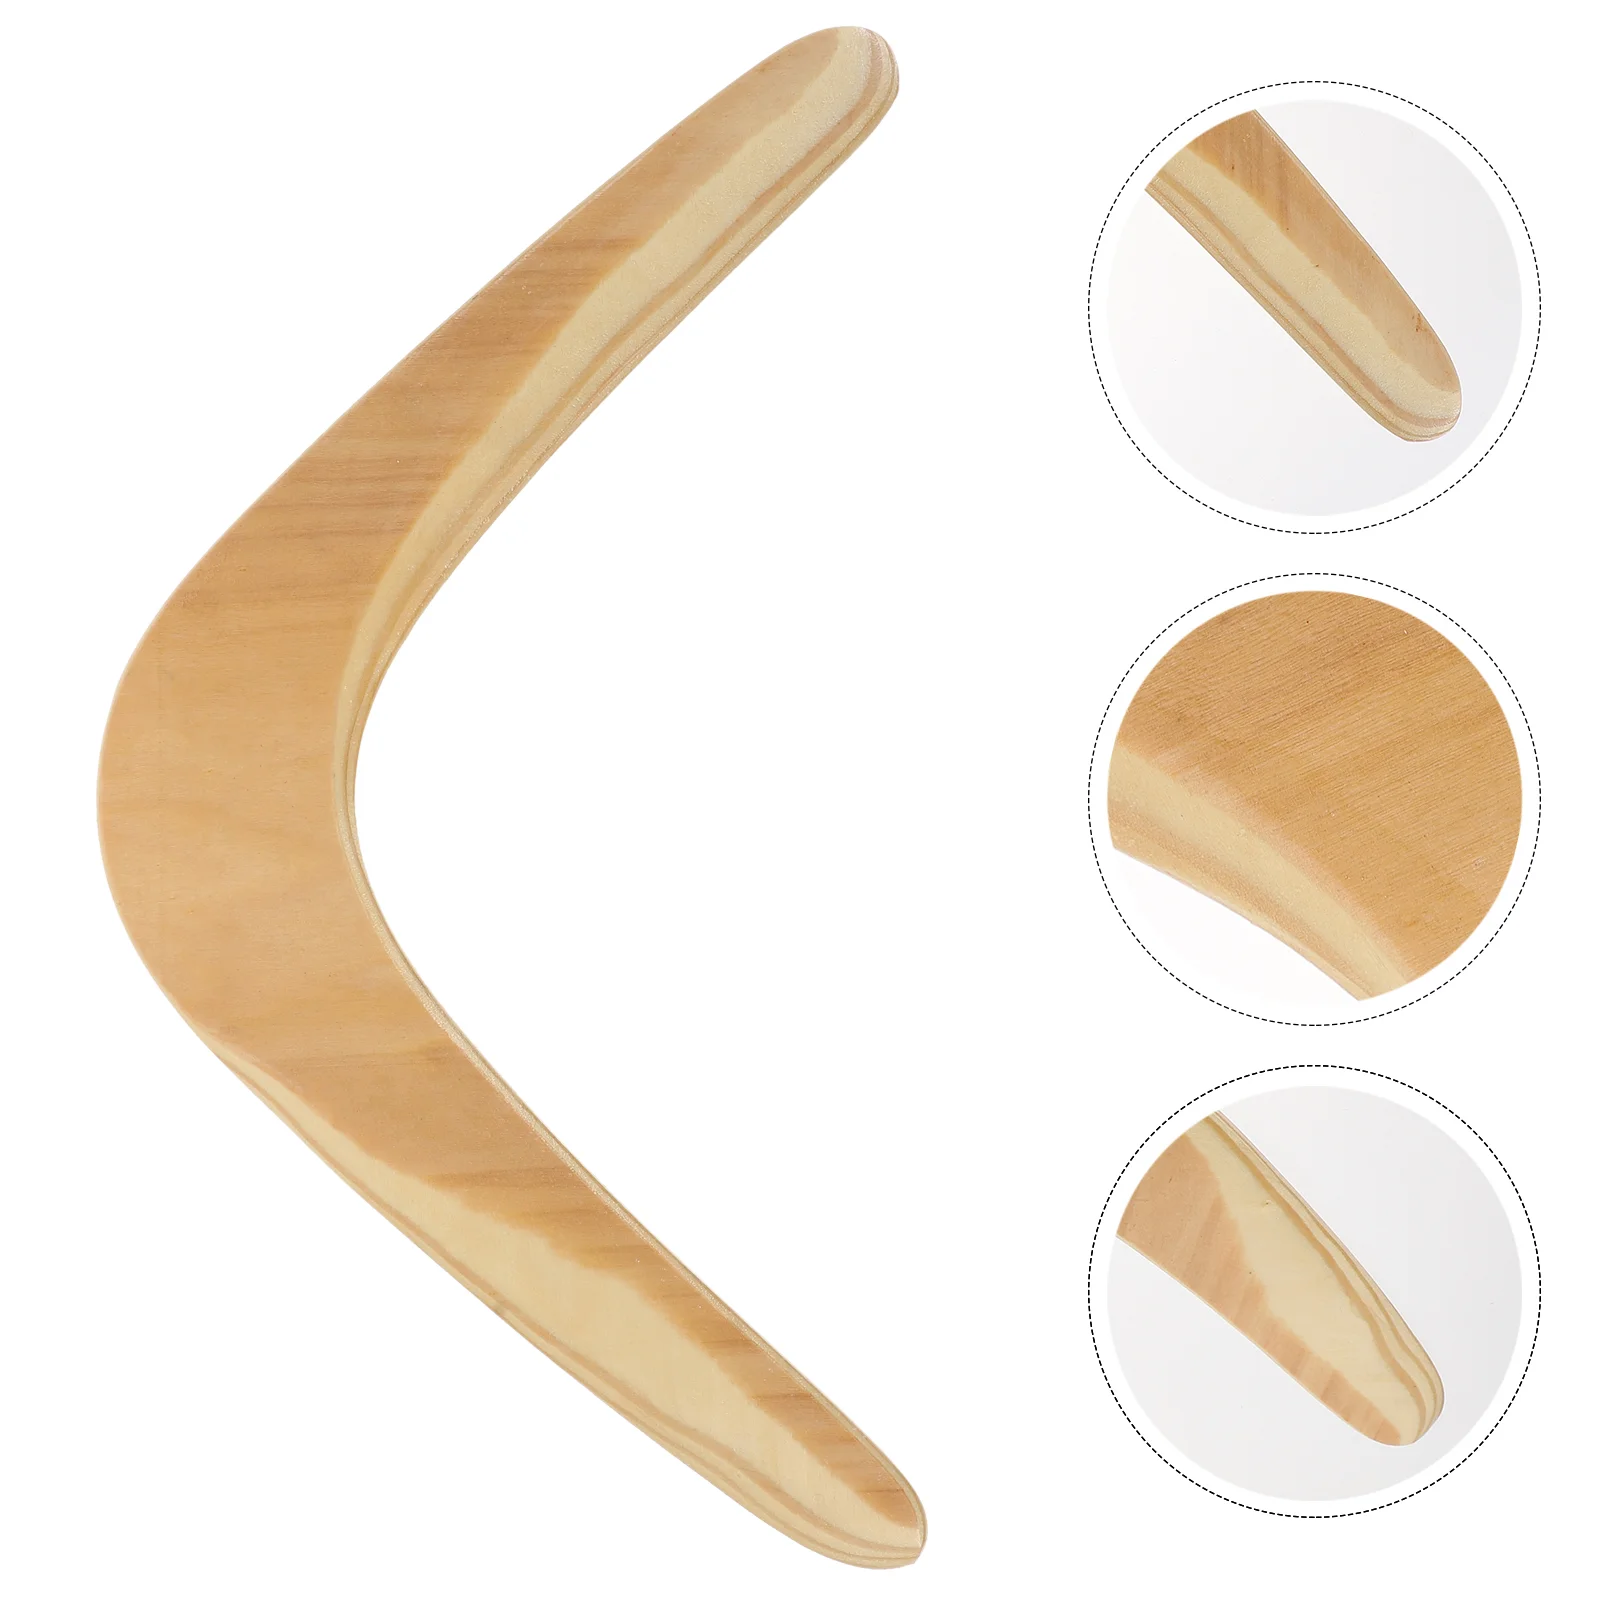 Handmade throwaback wooden boomerang #05 